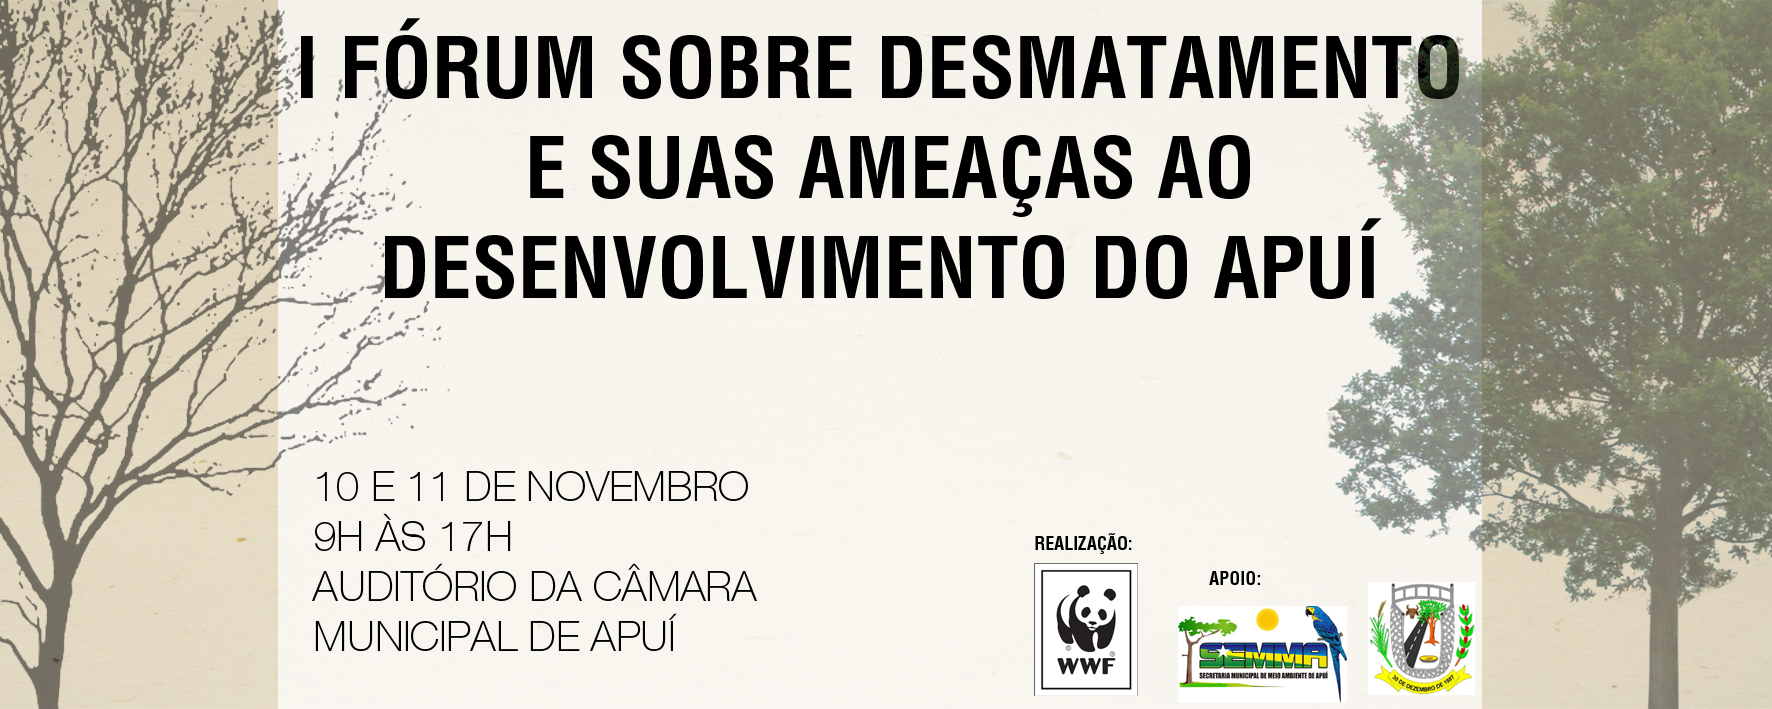 Material utilizado na divulgação do I Fórum sobre Desmatamento e suas Ameaças ao Desenvolvimento do Apuí